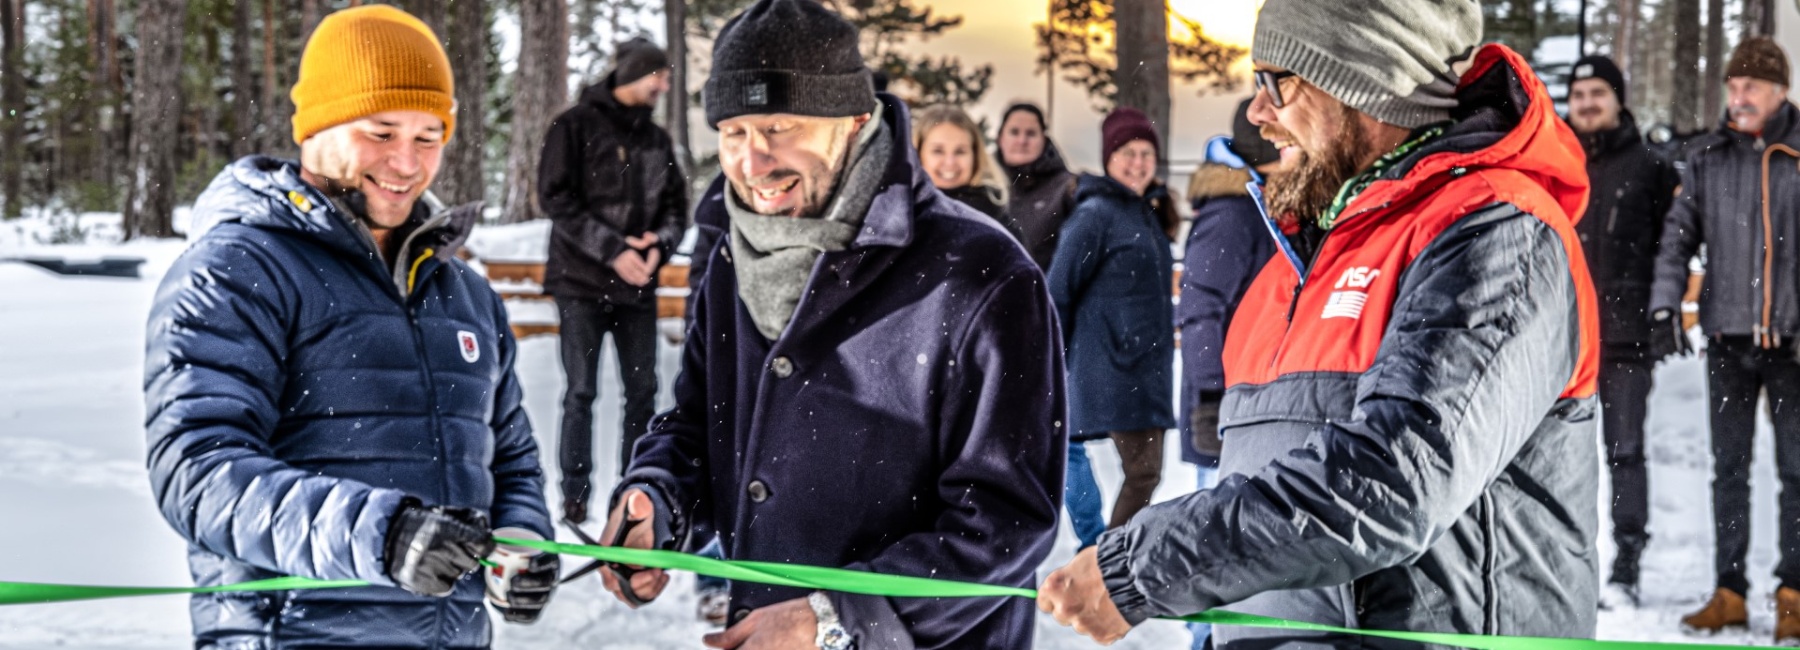 ÖÖDin perustajaveljekset Andreas ja Jaak Tiik pitelivät nauhaa, kun Pyhtään kunnan hallintojohtaja Tommi Koskinen (keskellä) käytteli saksia.